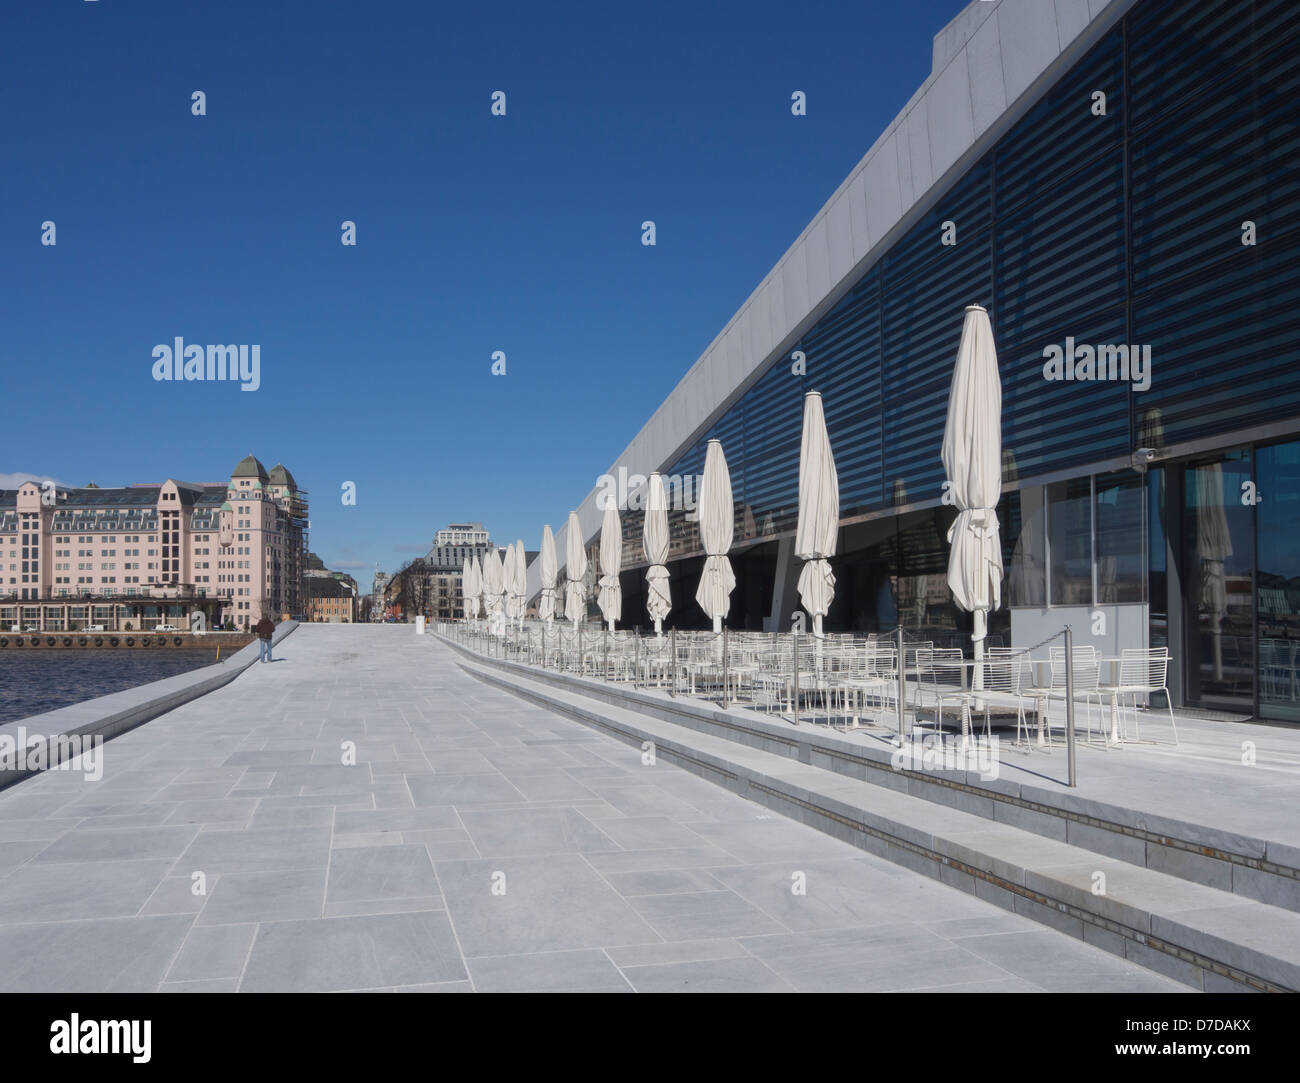 La ópera de Oslo por arquitectos Snøhetta, un nuevo punto de enfoque en Oslo, Noruega, vista desde el fiordo lateral, Paseo y café Foto de stock